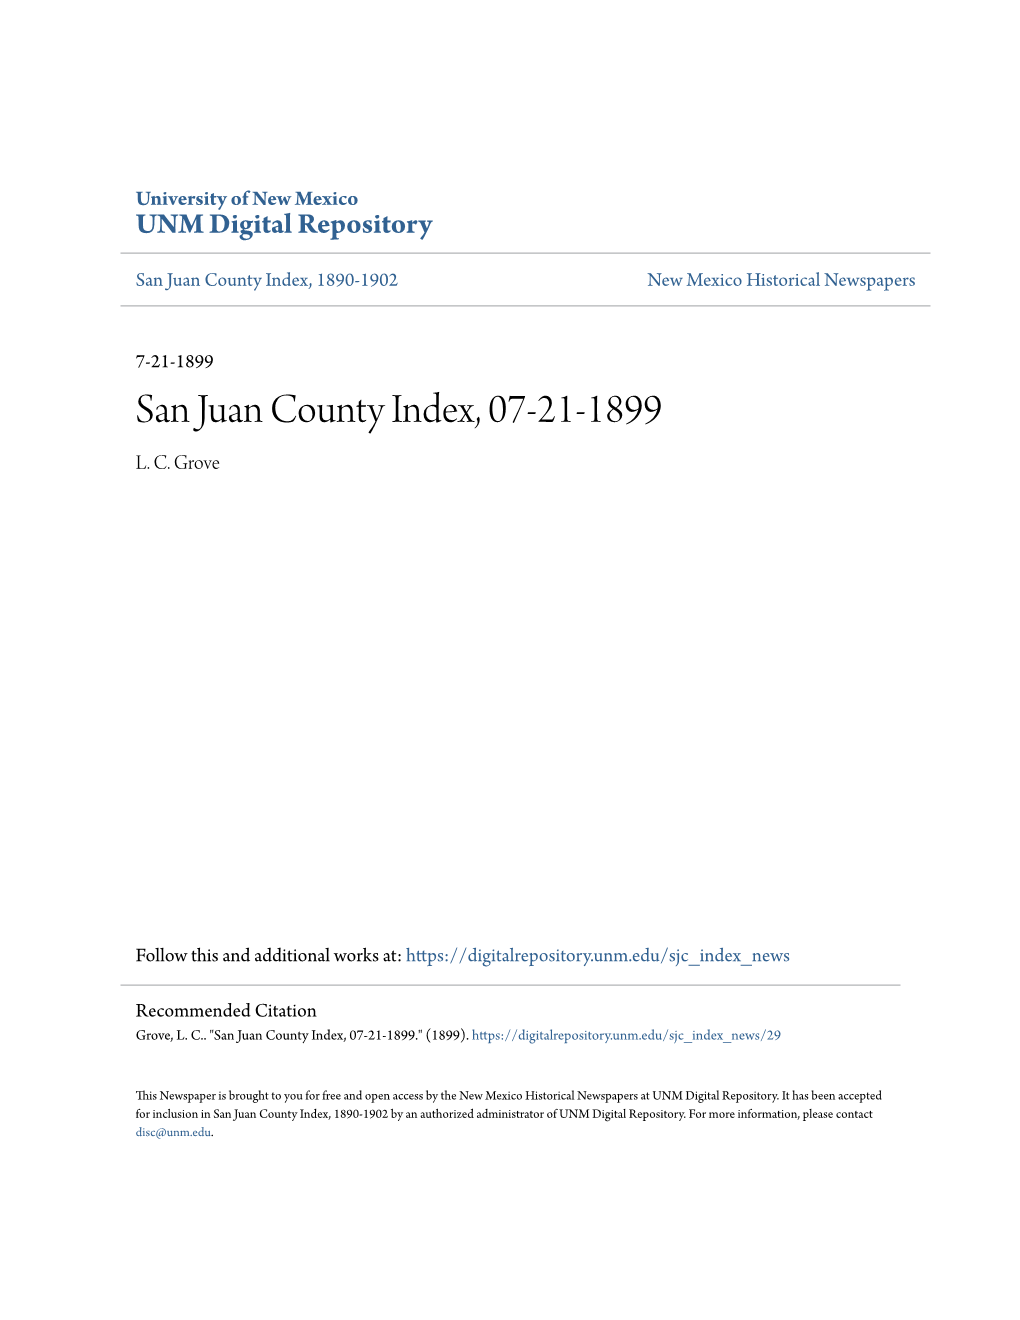 San Juan County Index, 07-21-1899 L